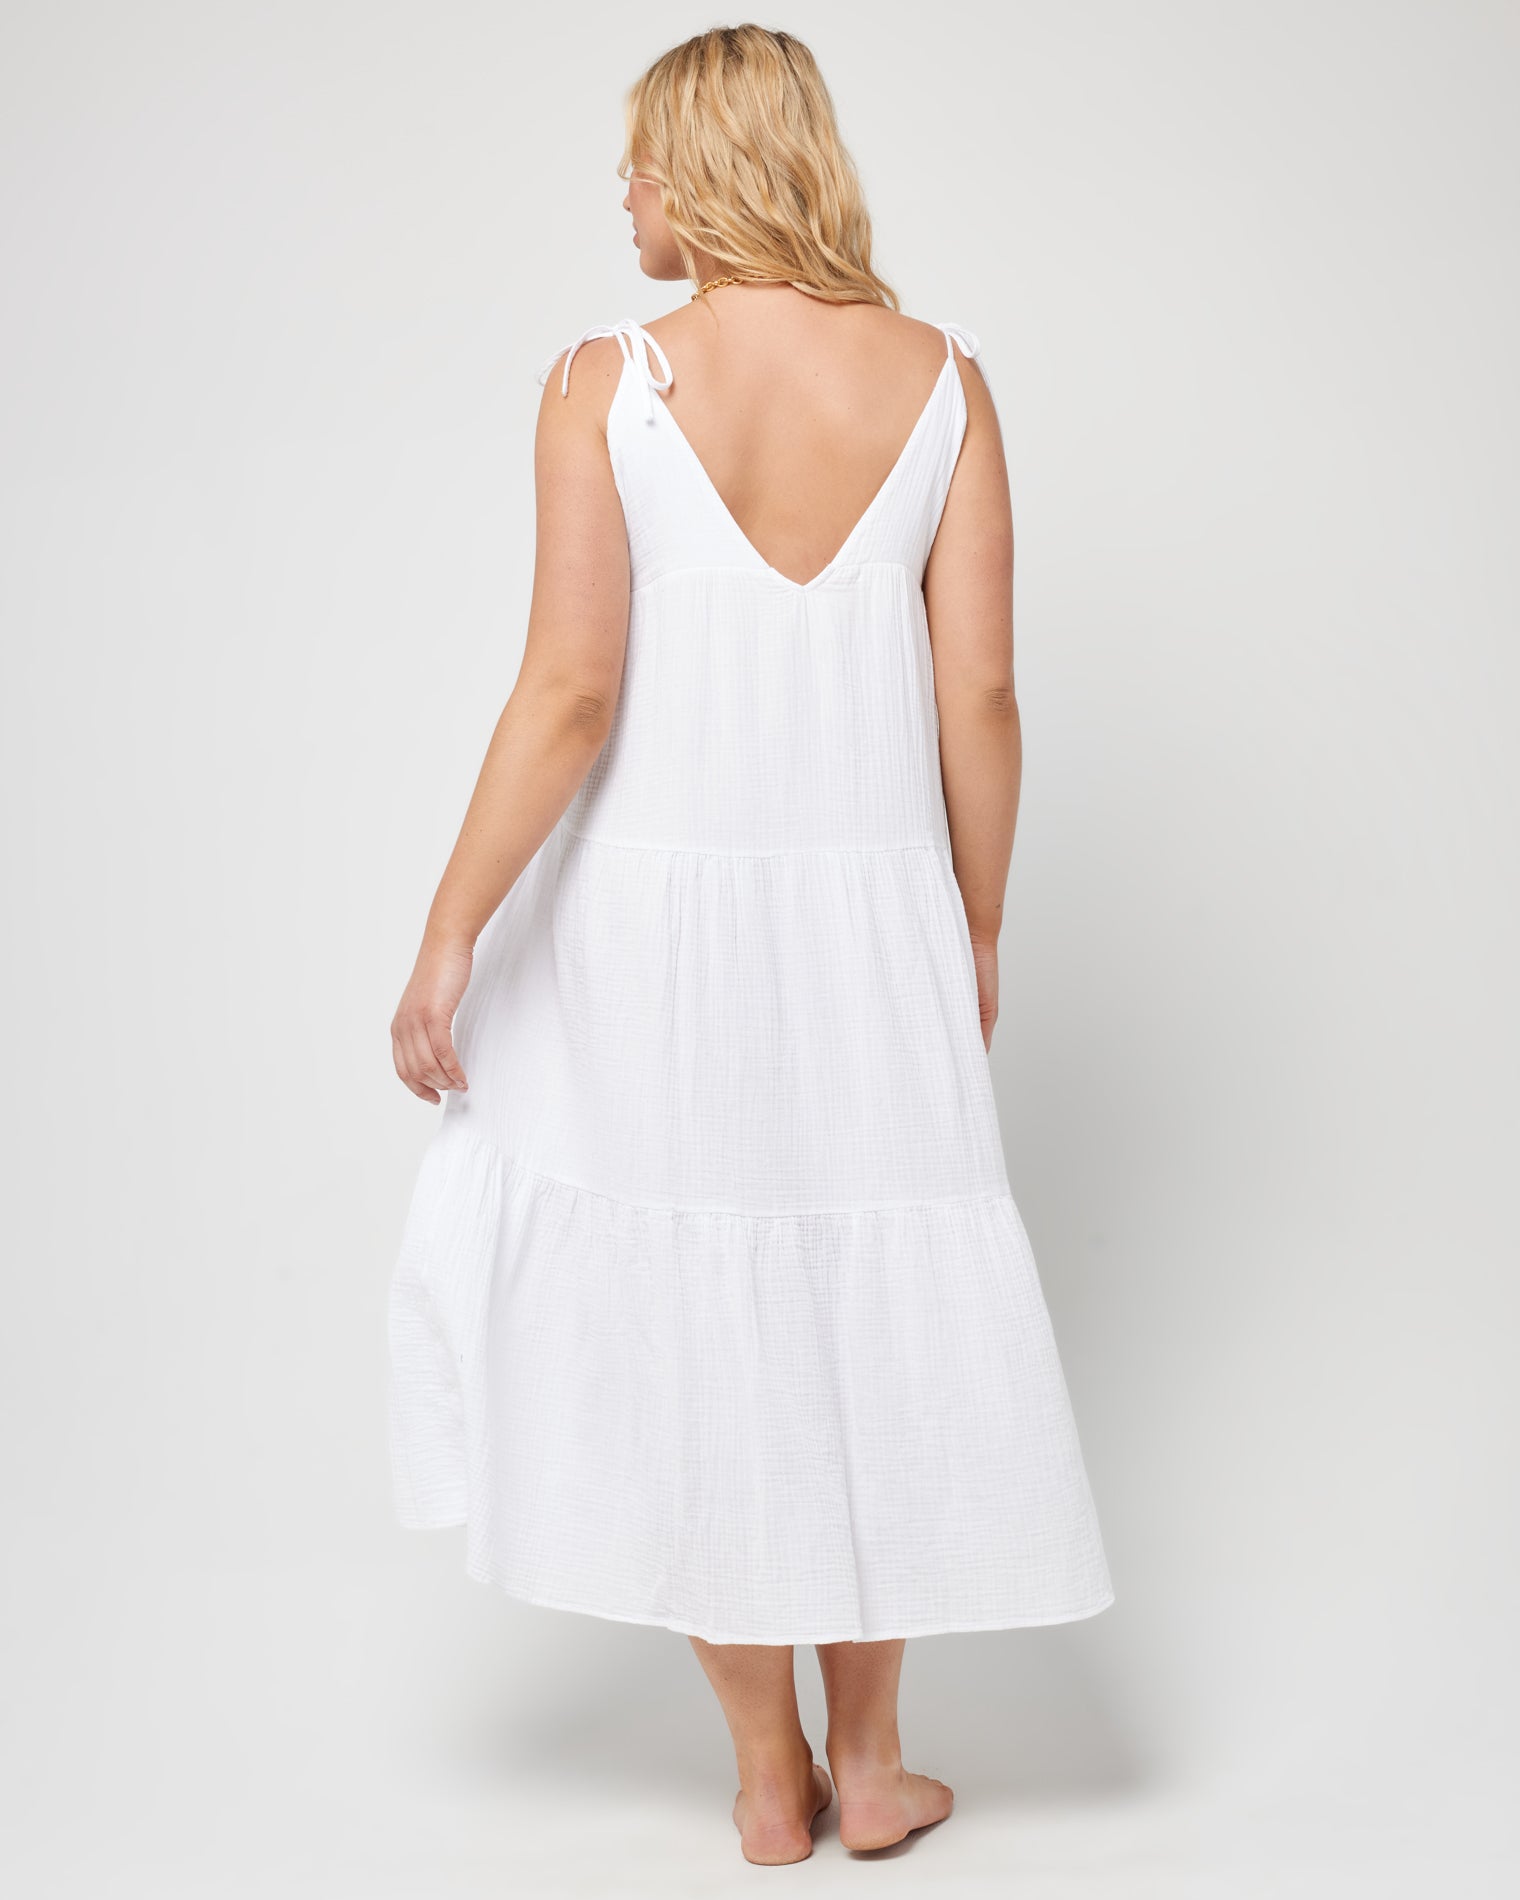 Ava Dress White | Model: Sydney (size: XL)